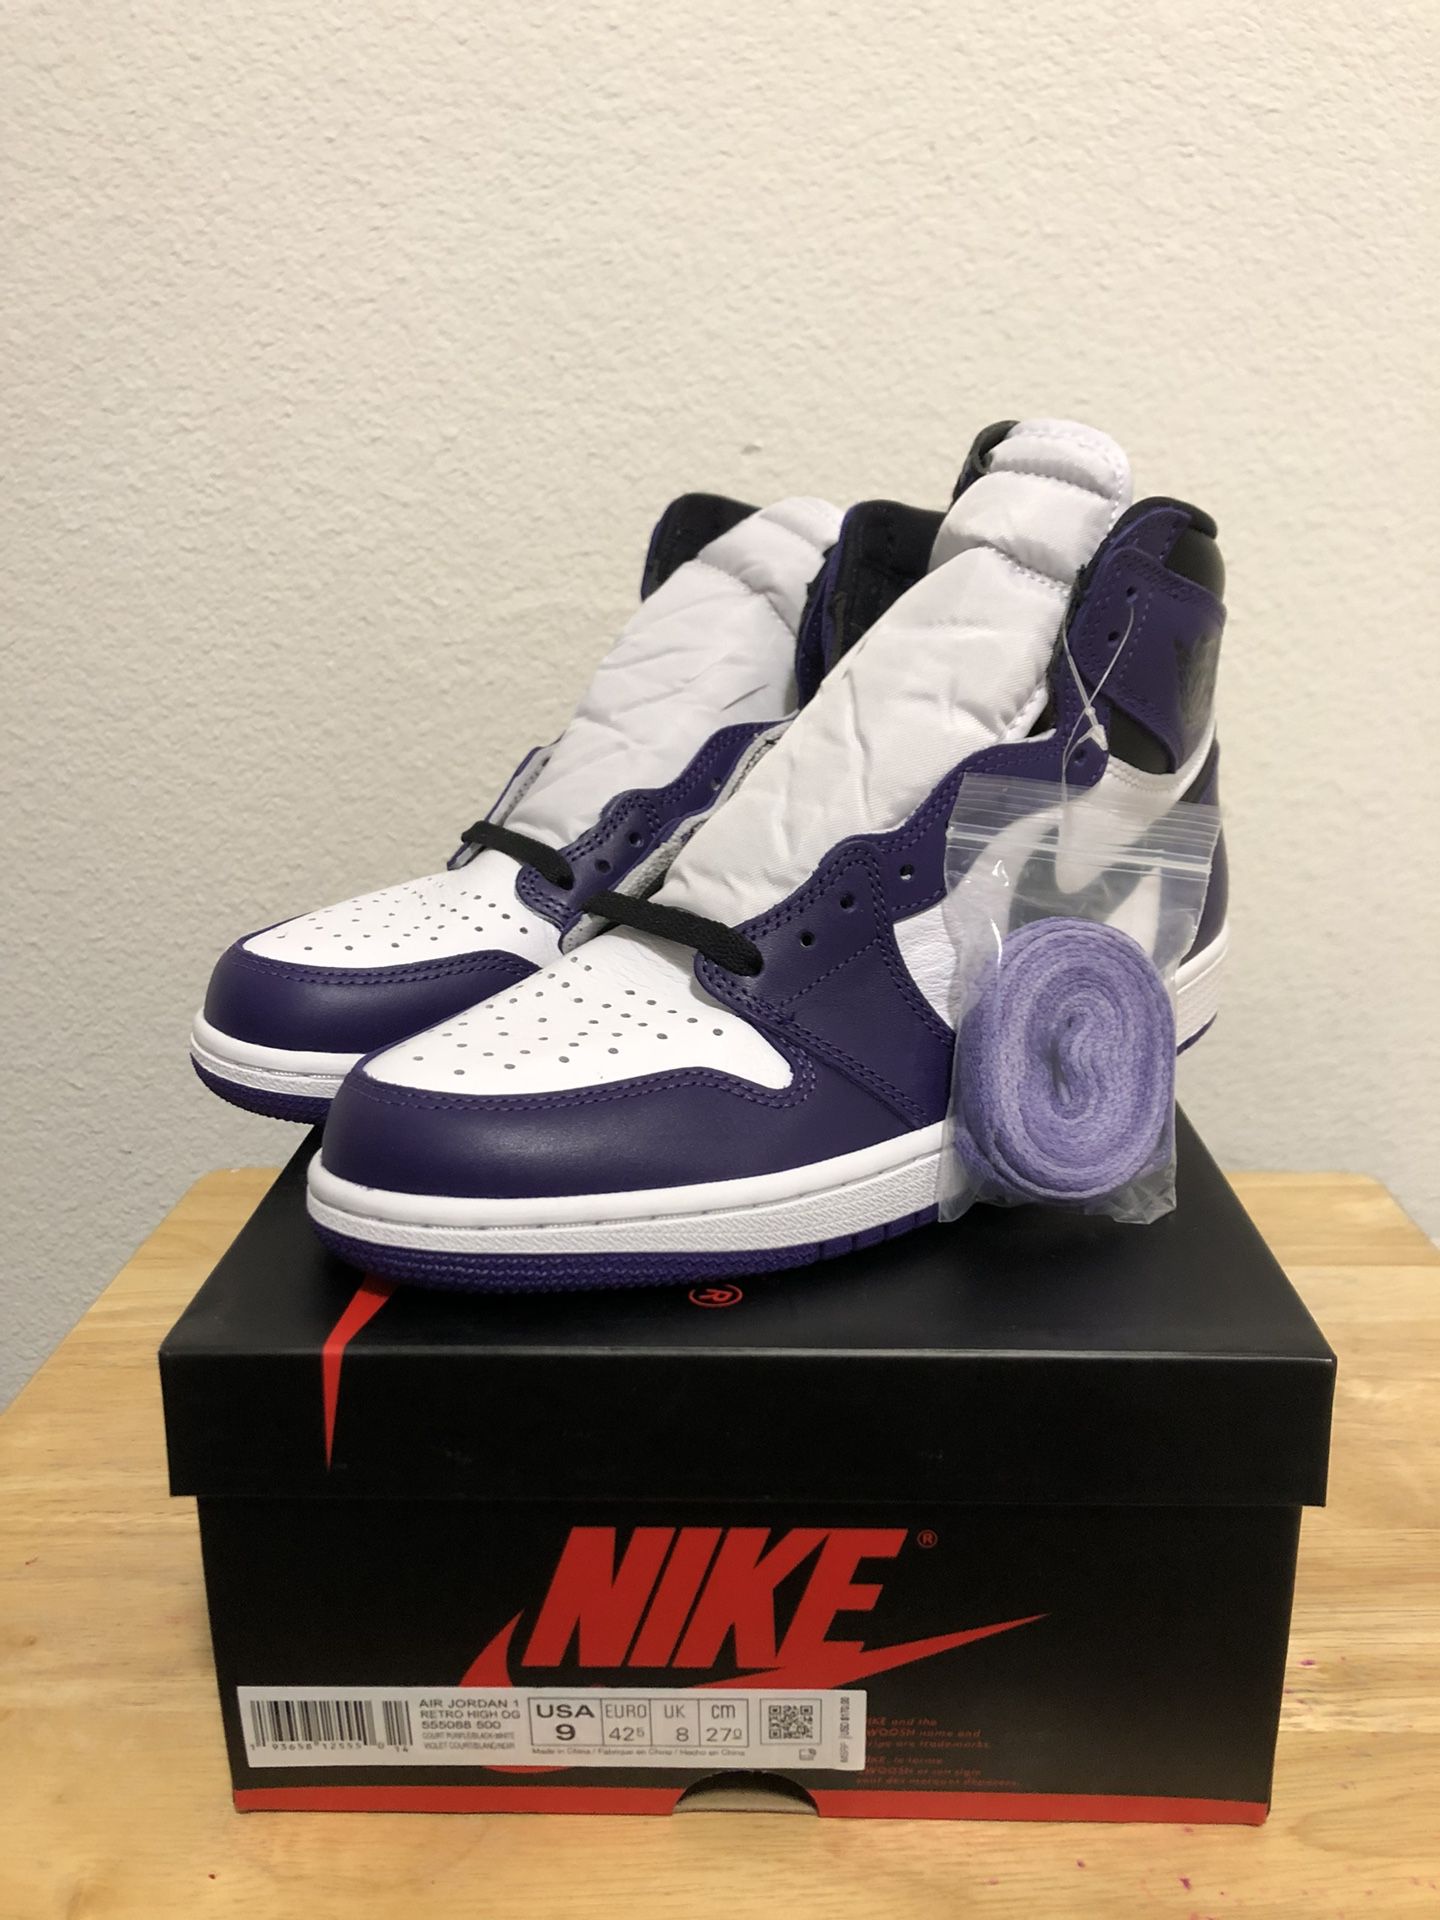 DS Jordan 1 Court Purple size 9